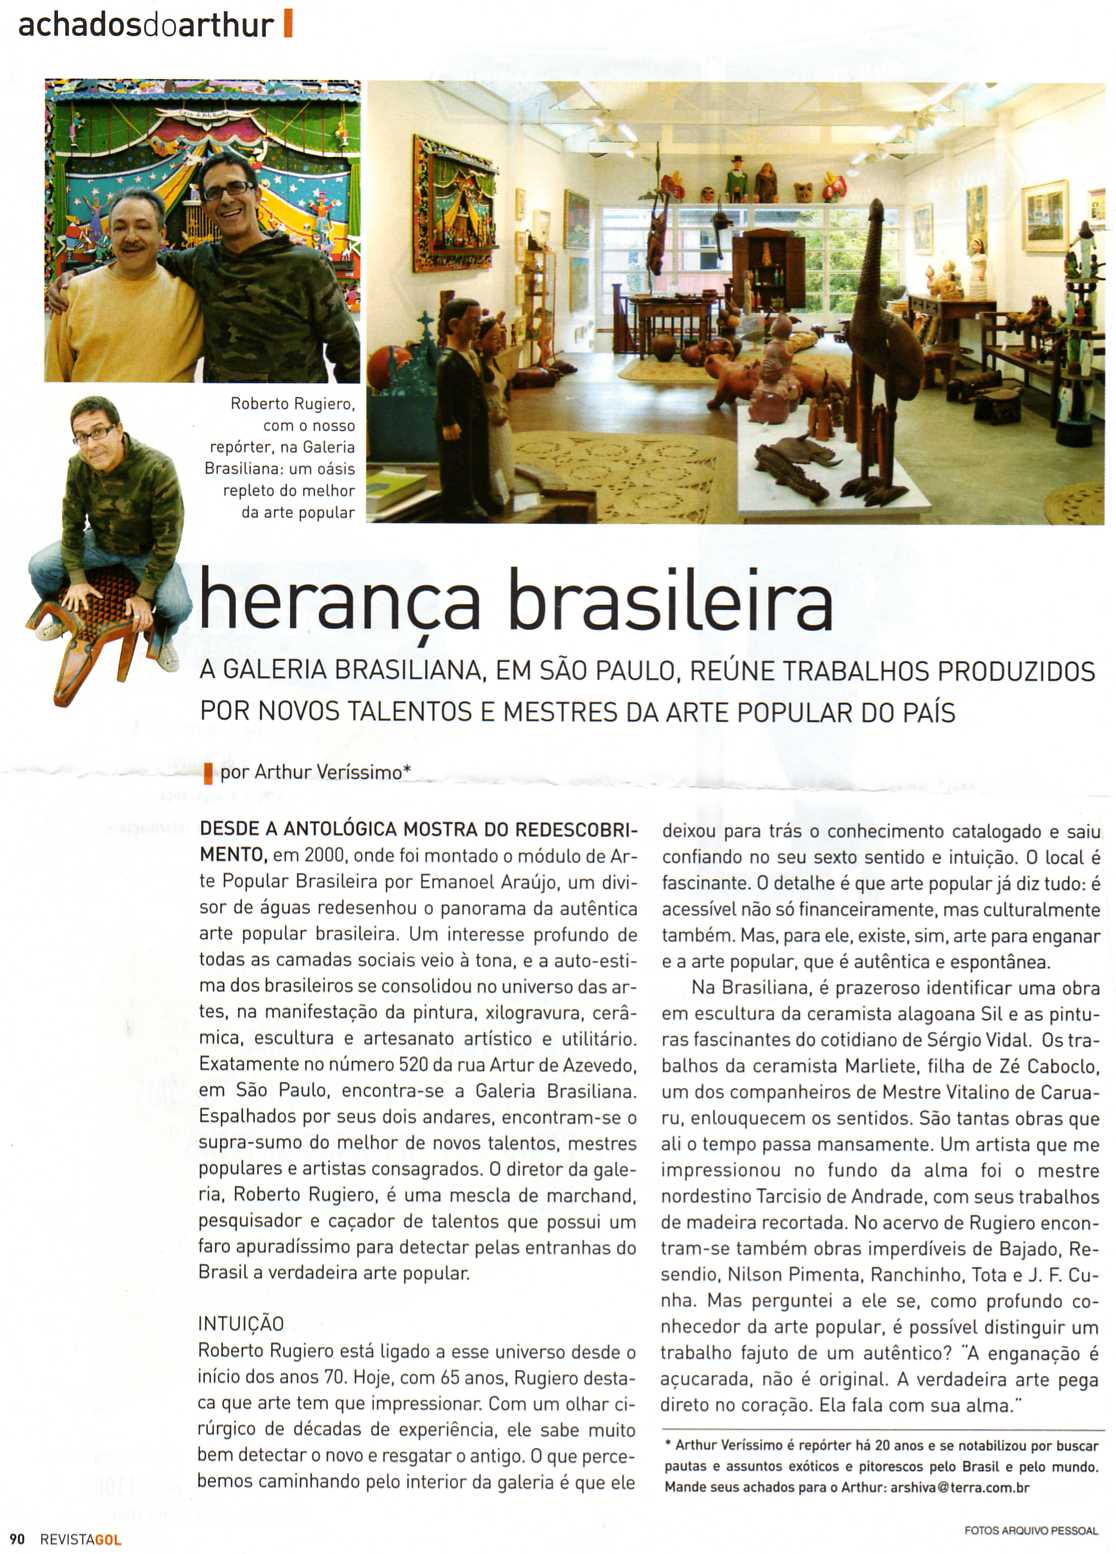 Revista Gol 2007